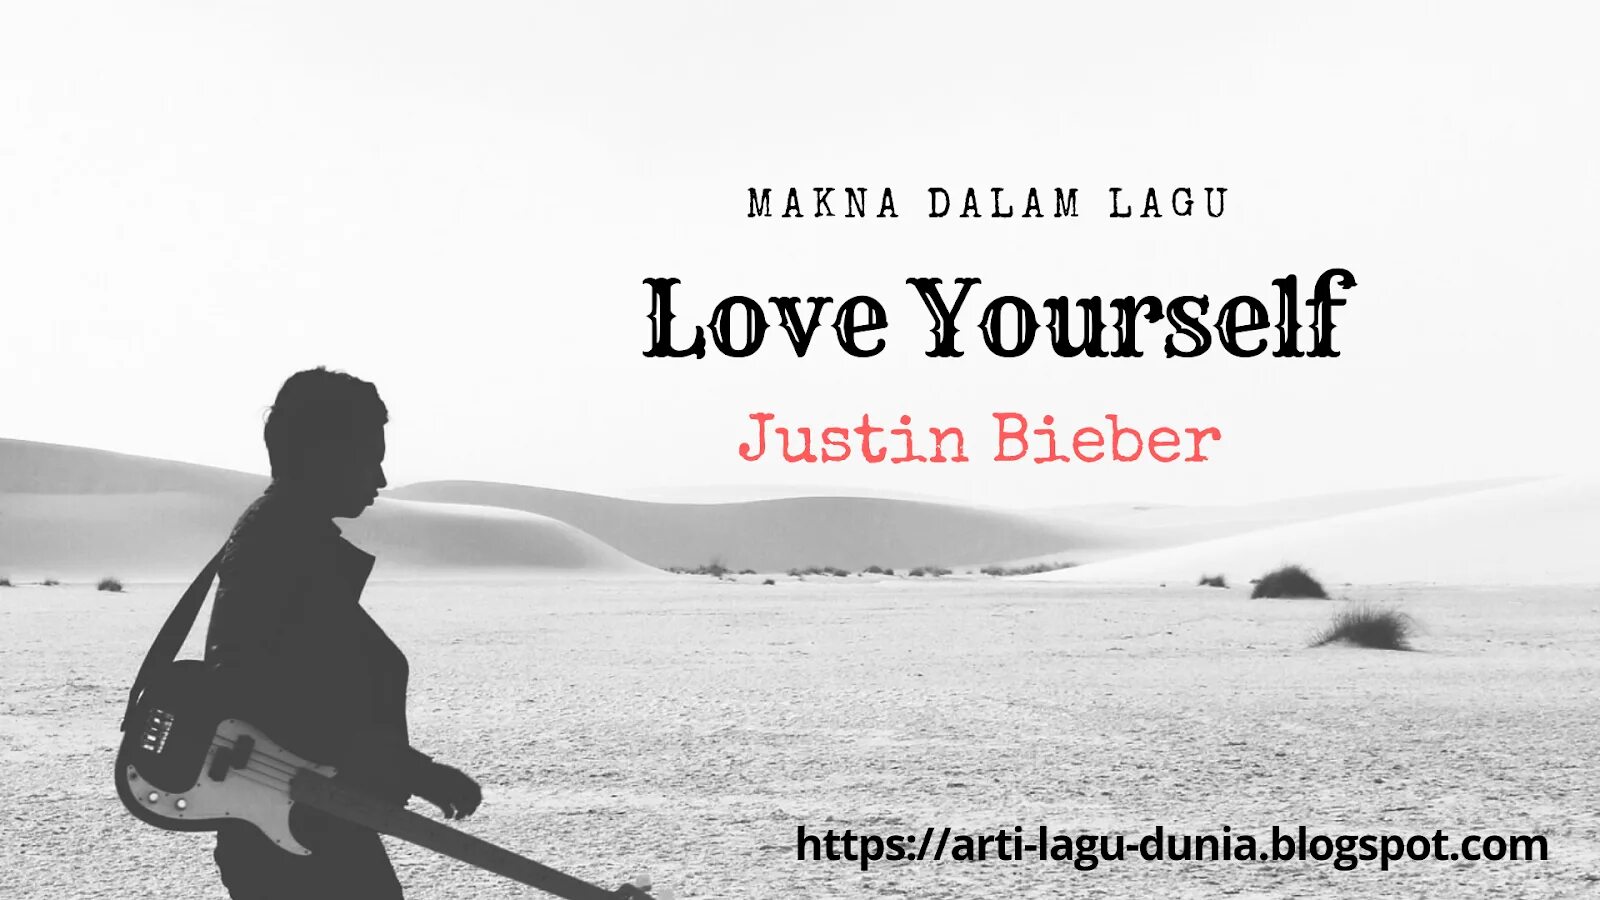 Бибер Love yourself. Justin Bieber Love yourself. Love yourself Justin Bieber текст. Love yourself Justin Bieber Ноты. Love yourself текст